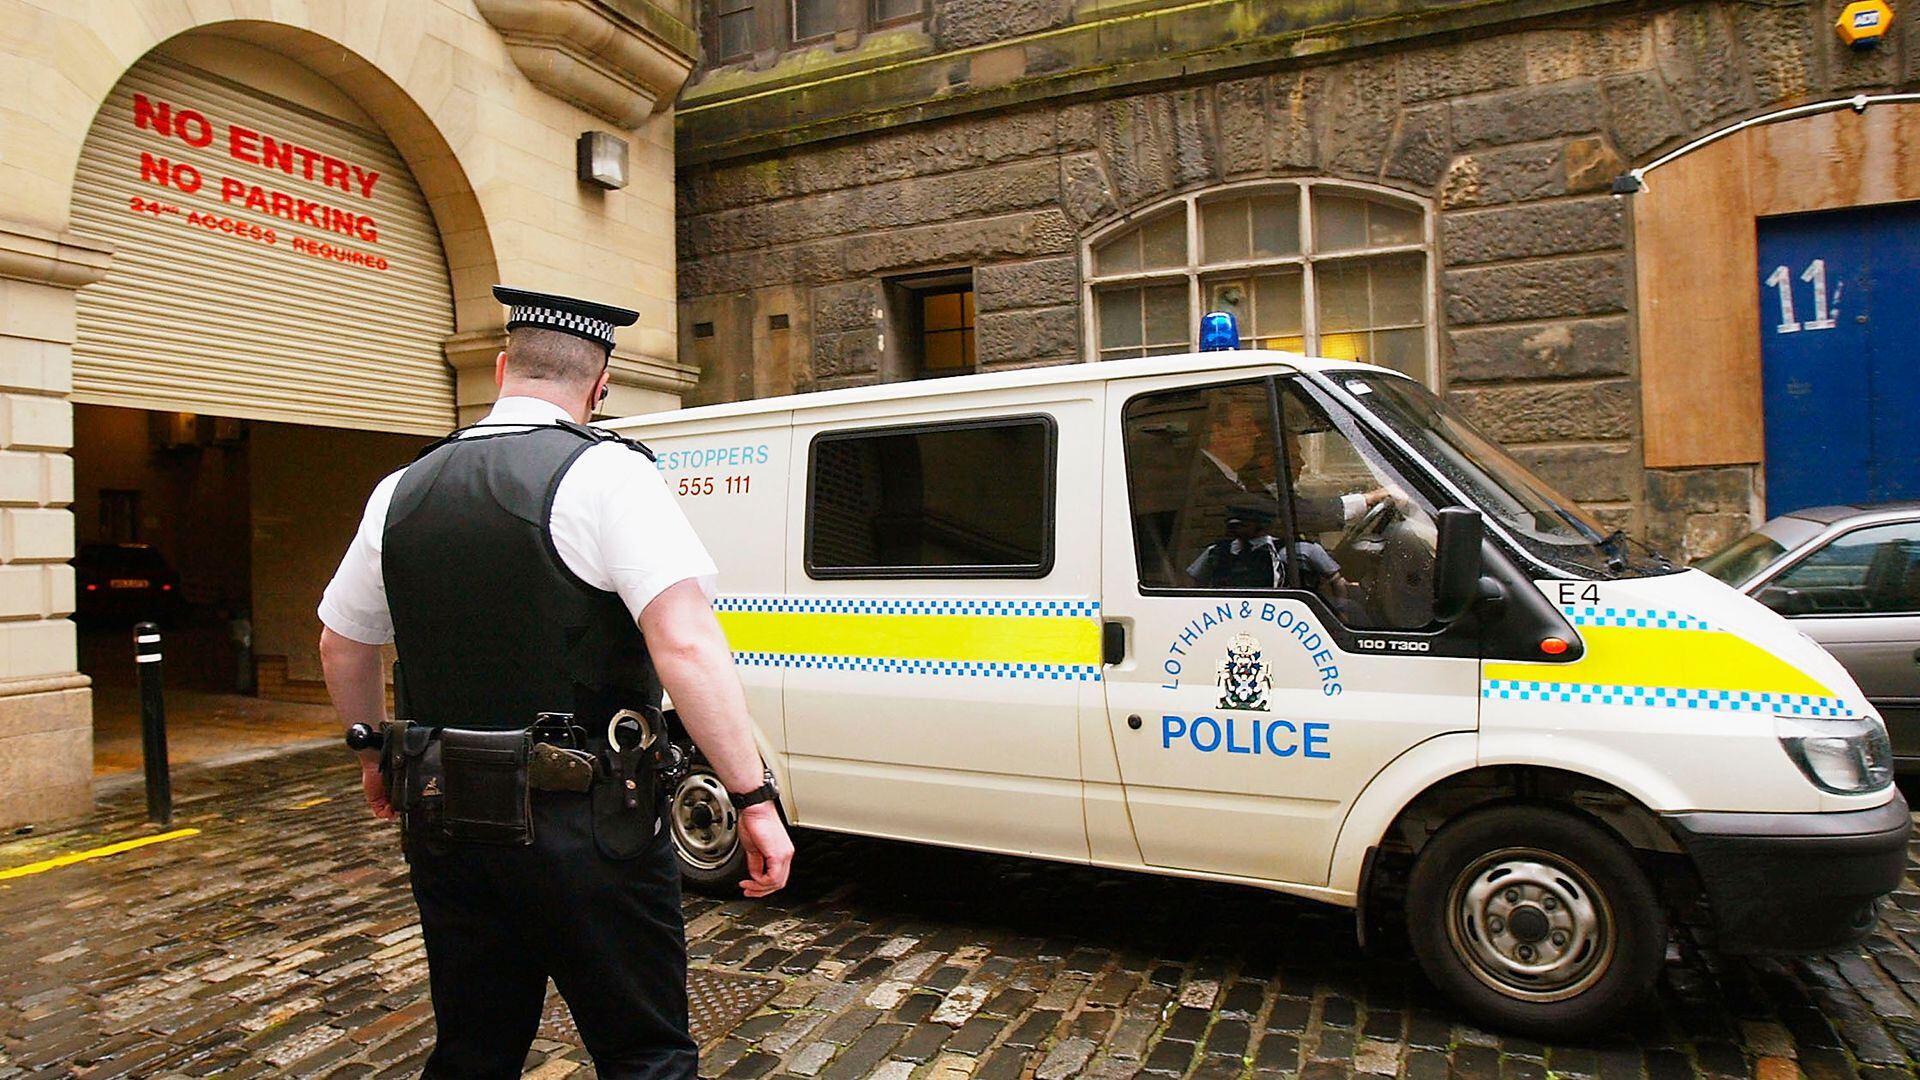 El chico de quince años detenido por asesinato en Edimburgo es expulsado a toda velocidad del Tribunal del Sheriff de Edimburgo, el 15 de abril de 2004. El joven fue arrestado por el asesinato de la colegiala Jodi Jones y su madre fue acusada de intentar desviar el curso de la justicia. (Photo by ChristopherFurlong/Getty Images)